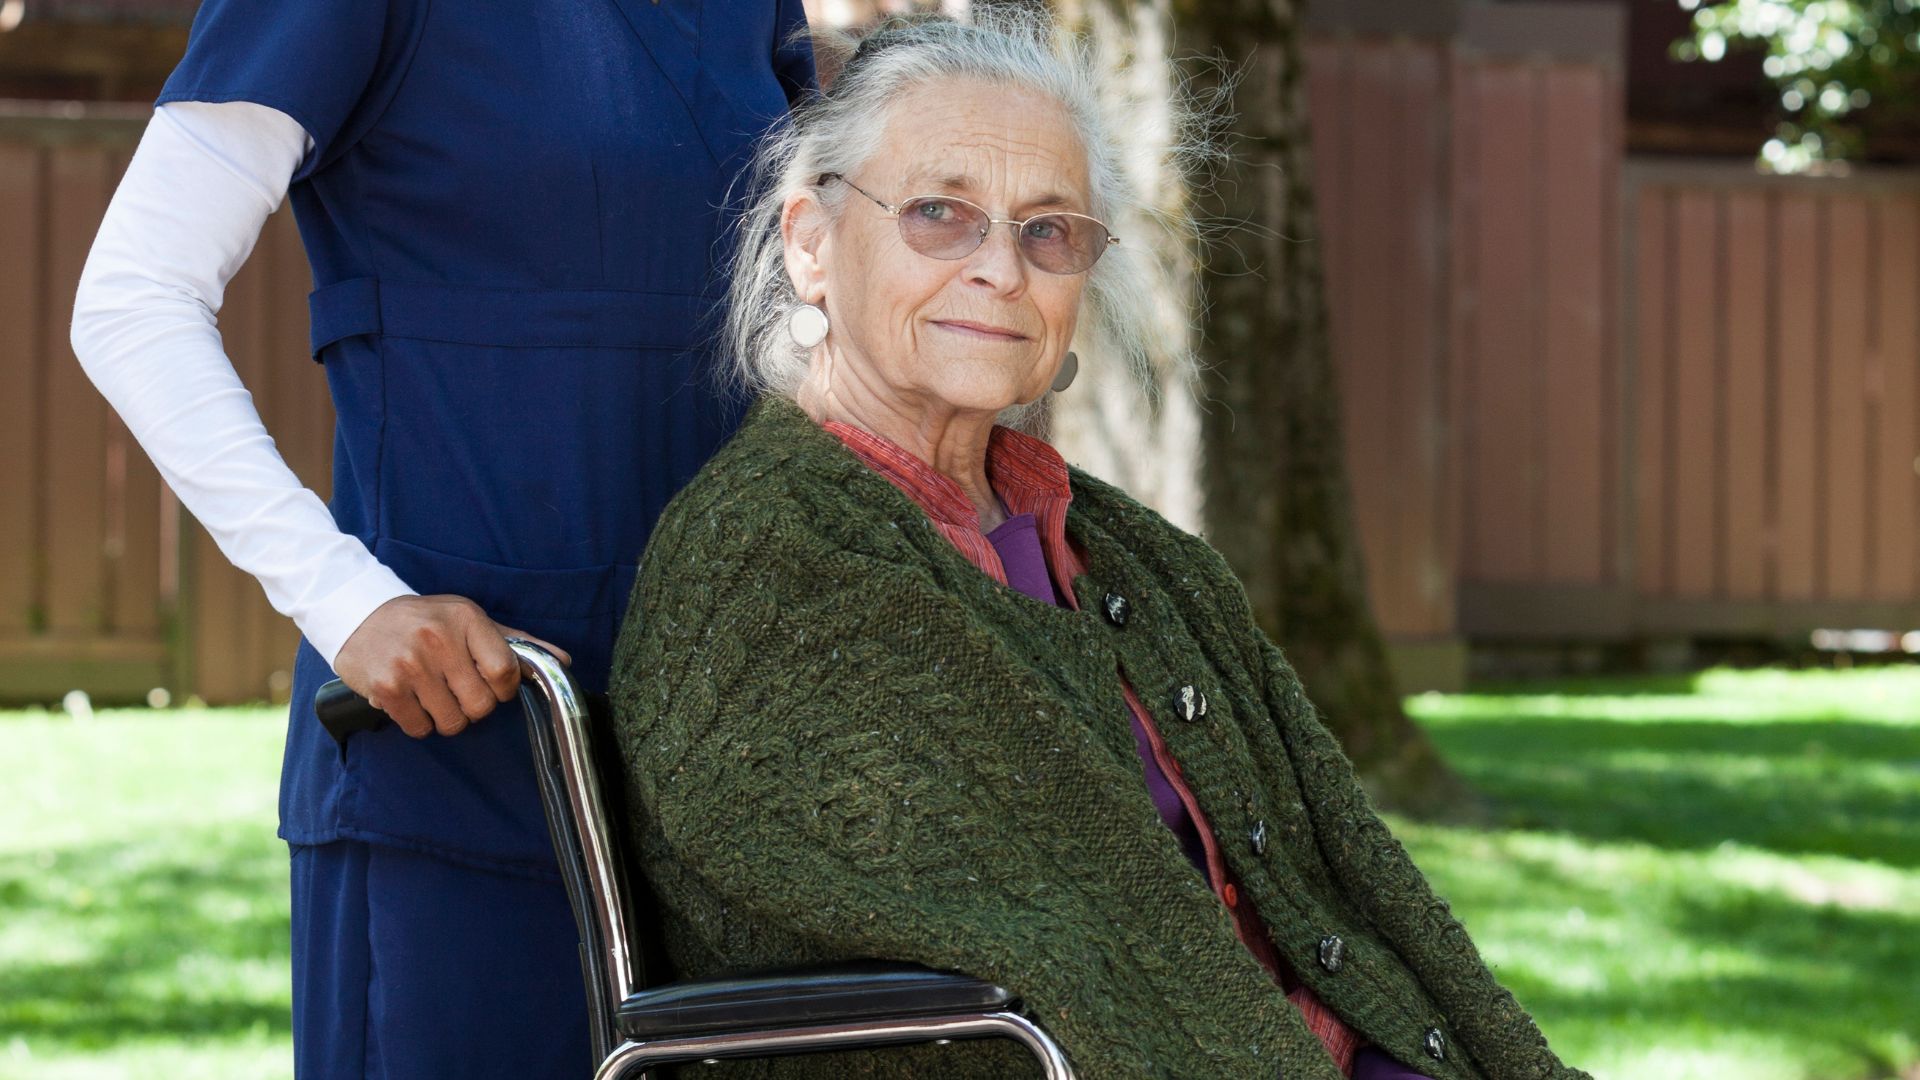 mujer mayor en silla de ruedas mirando a cámara y paseando con una cuidadora en un jardín